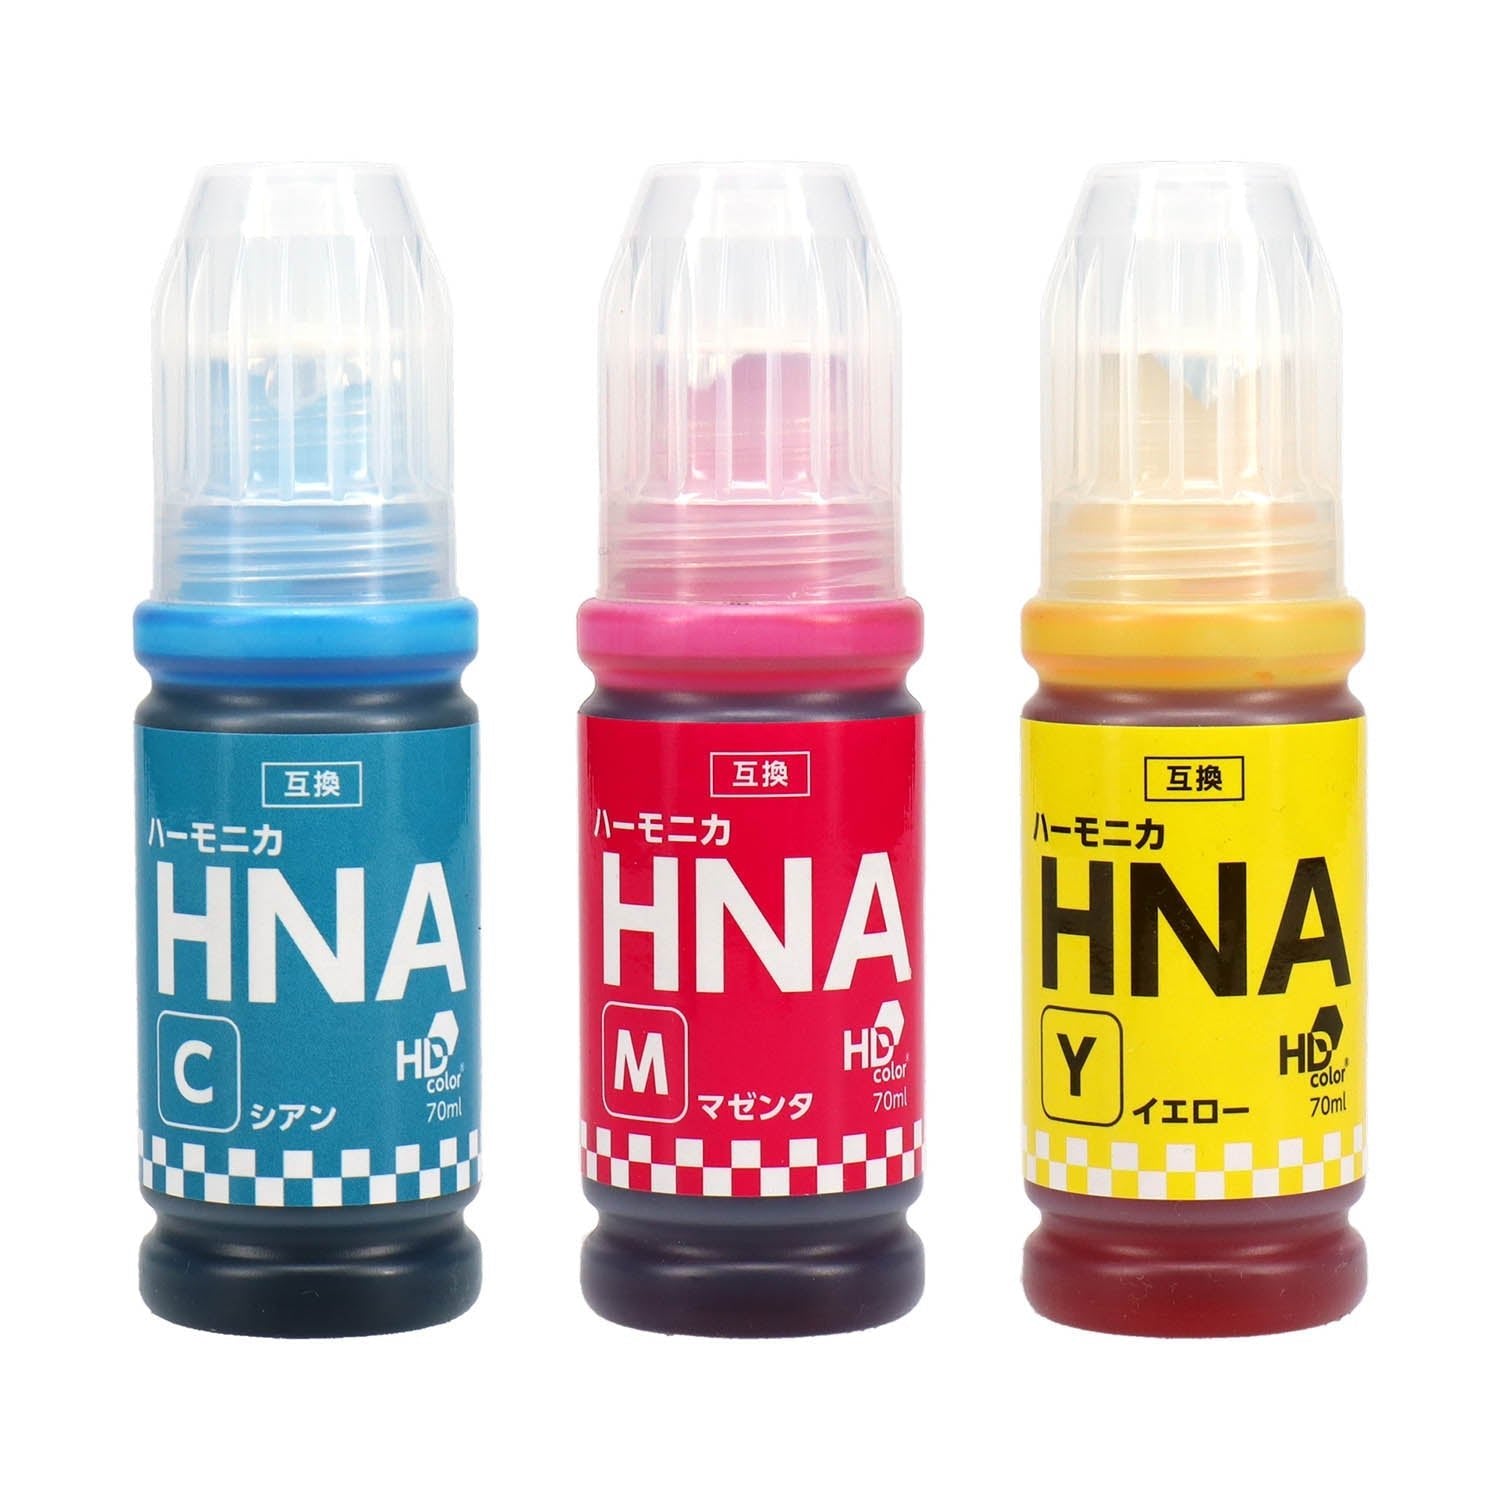 エプソン用 MKA-HNA (マラカス・ハーモニカ) 互換インクボトル 5色セット